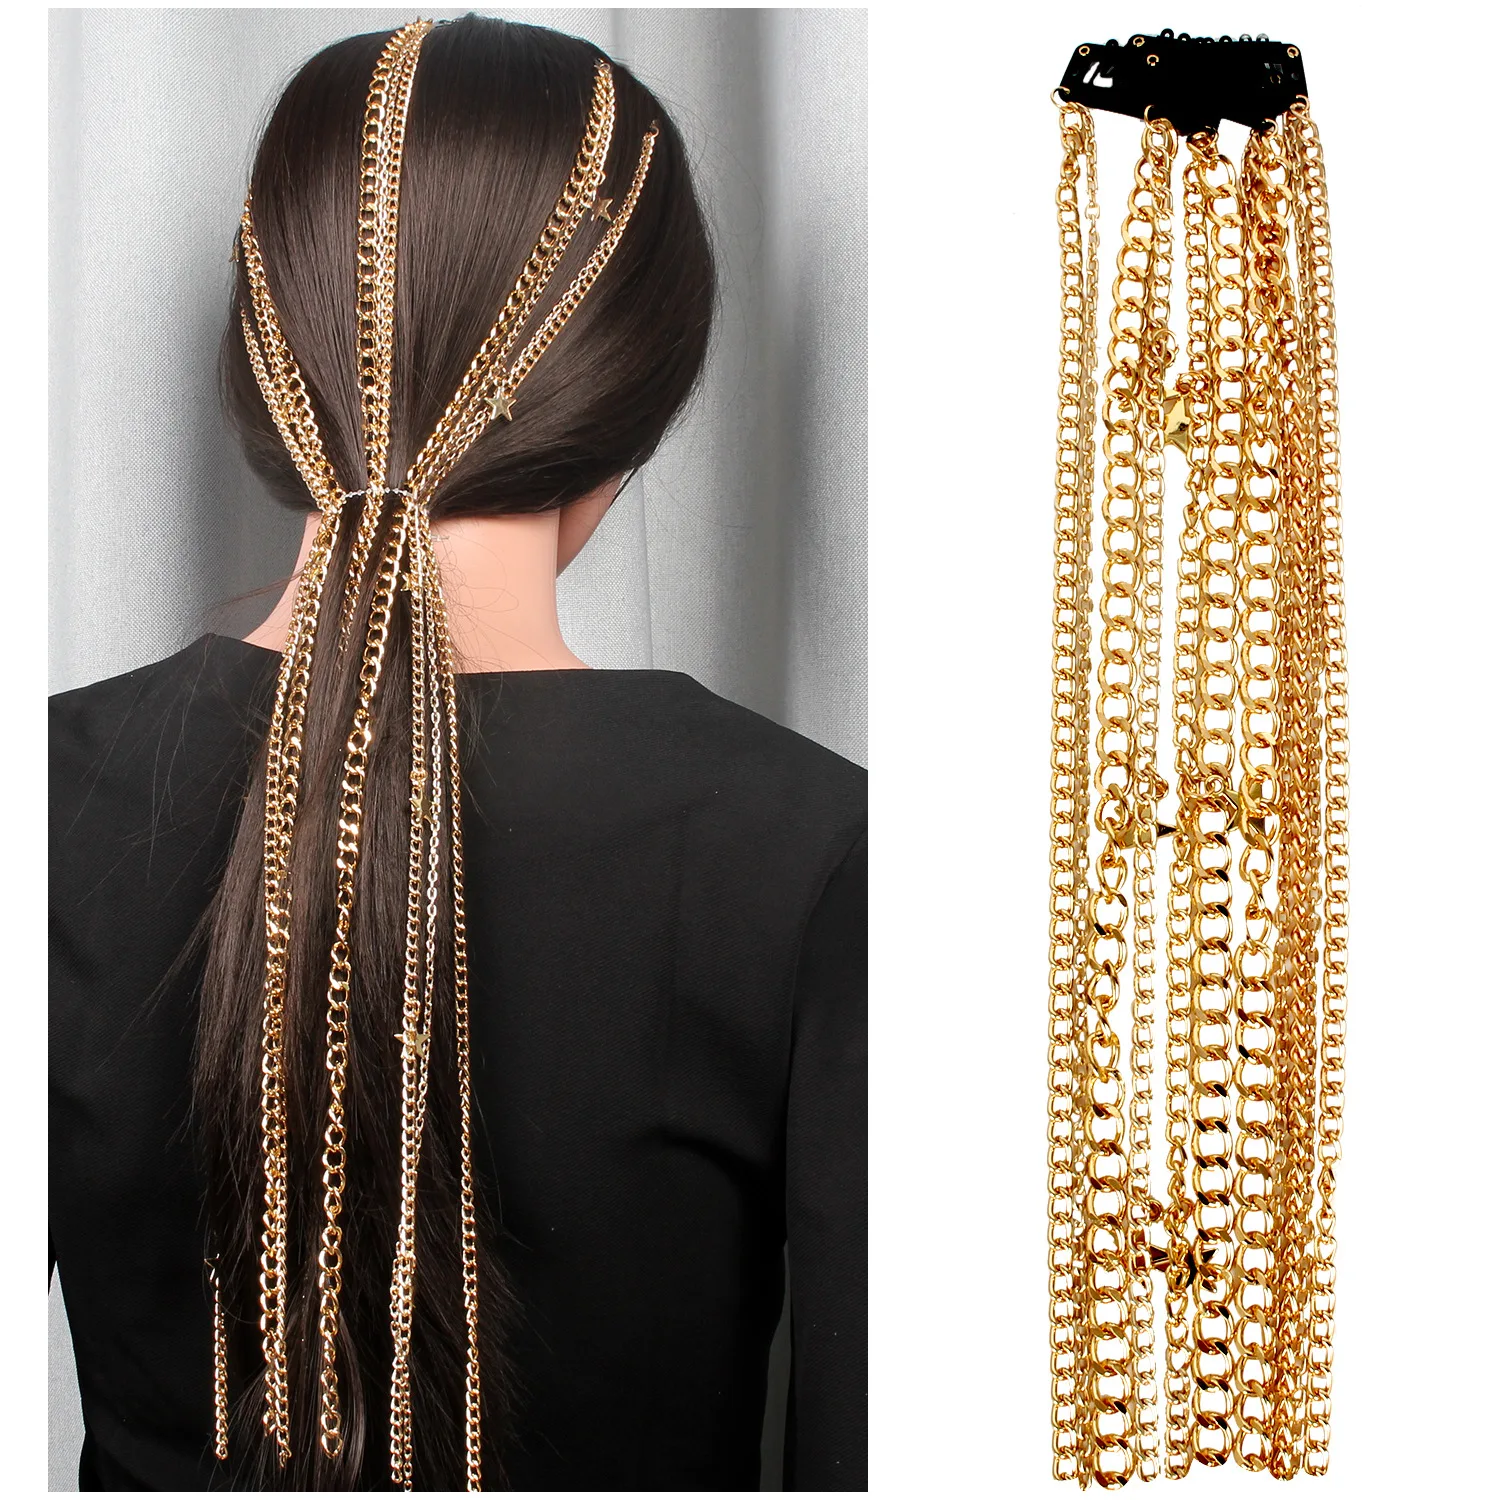 ZVZO Новая мода имитация жемчуга Hairband для женщин аксессуары для волос девушки длинный бахрома узел веревка массивные волосы советы подарки